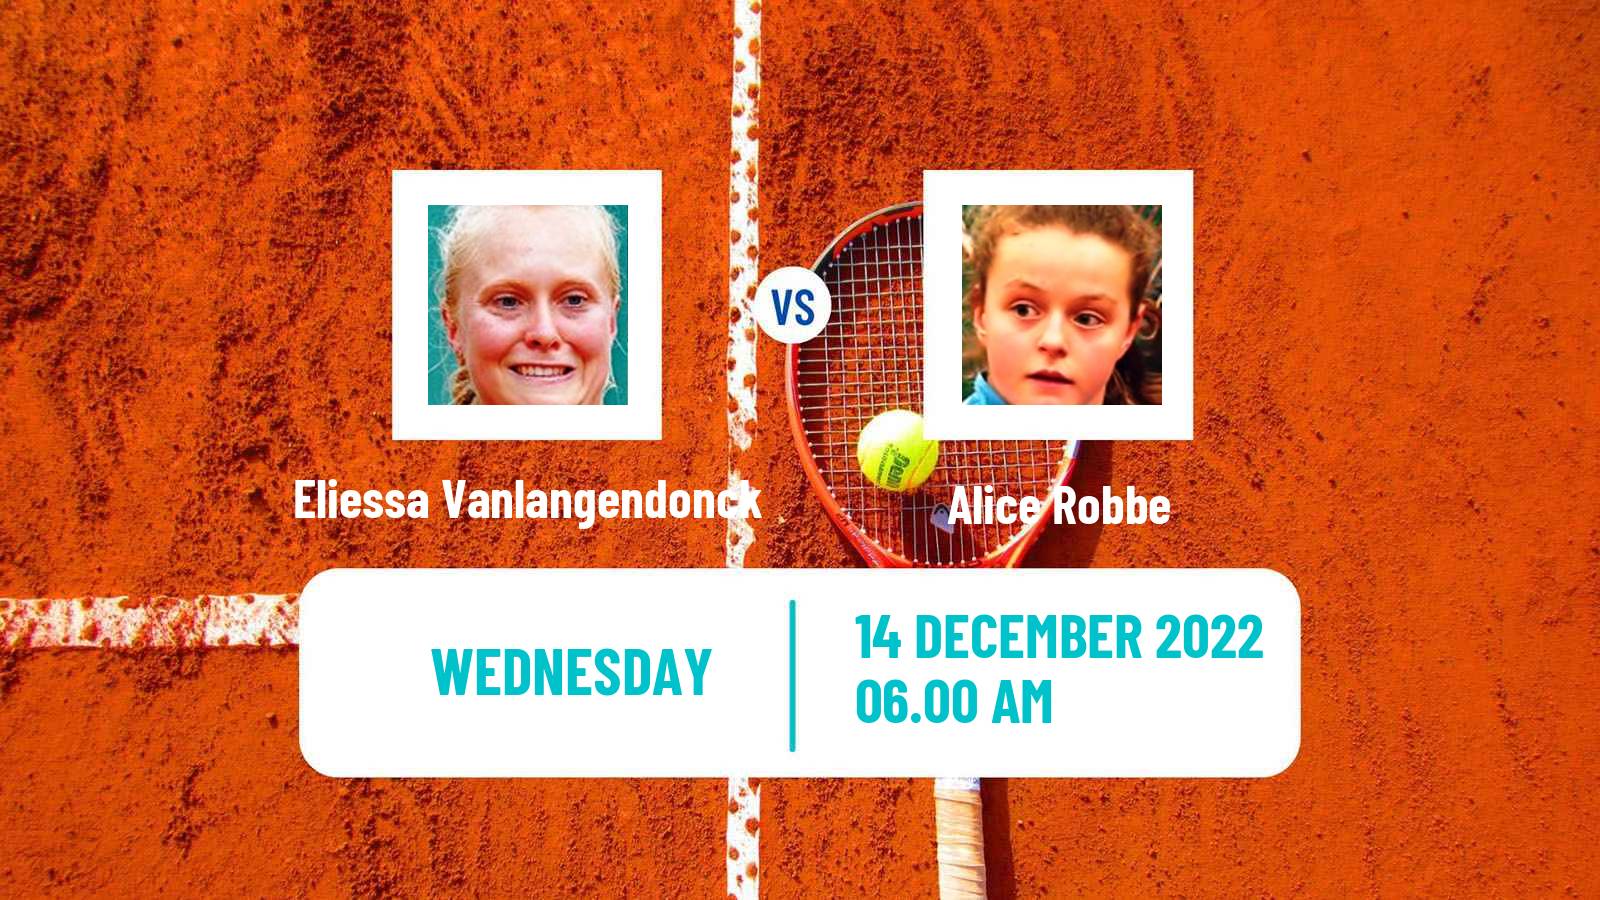 Tennis ITF Tournaments Eliessa Vanlangendonck - Alice Robbe